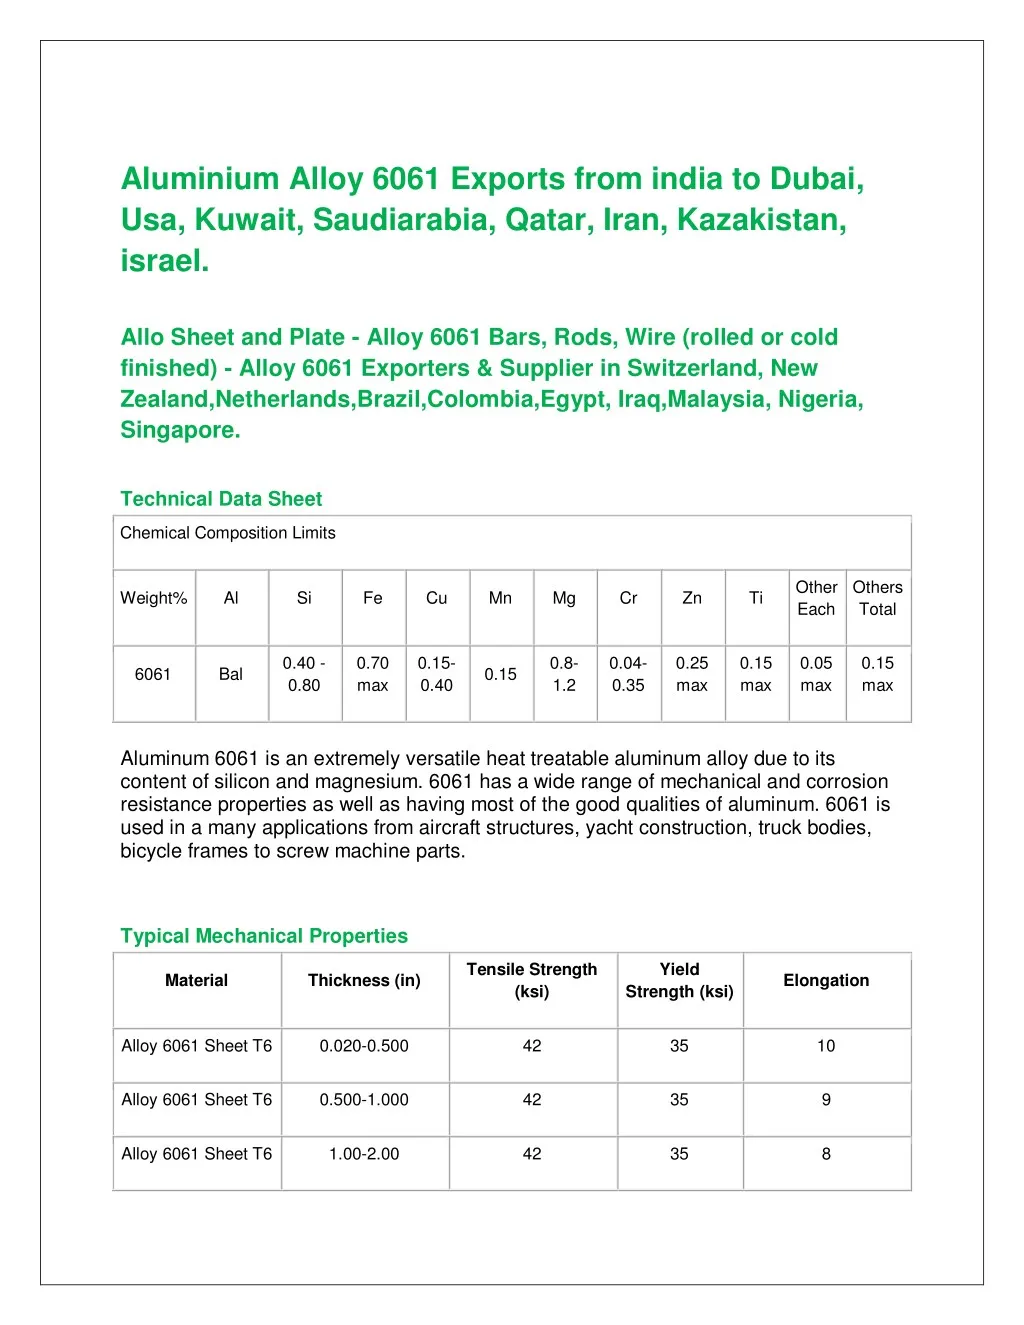 aluminium alloy 6061 exports from india to dubai